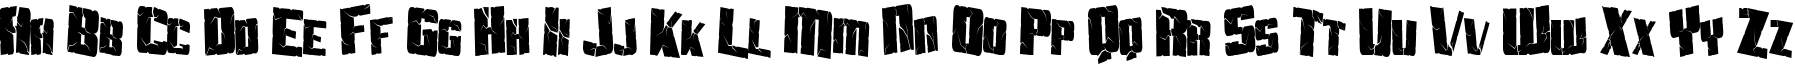 Пример написания английского алфавита шрифтом Aftershock Debris Condensed